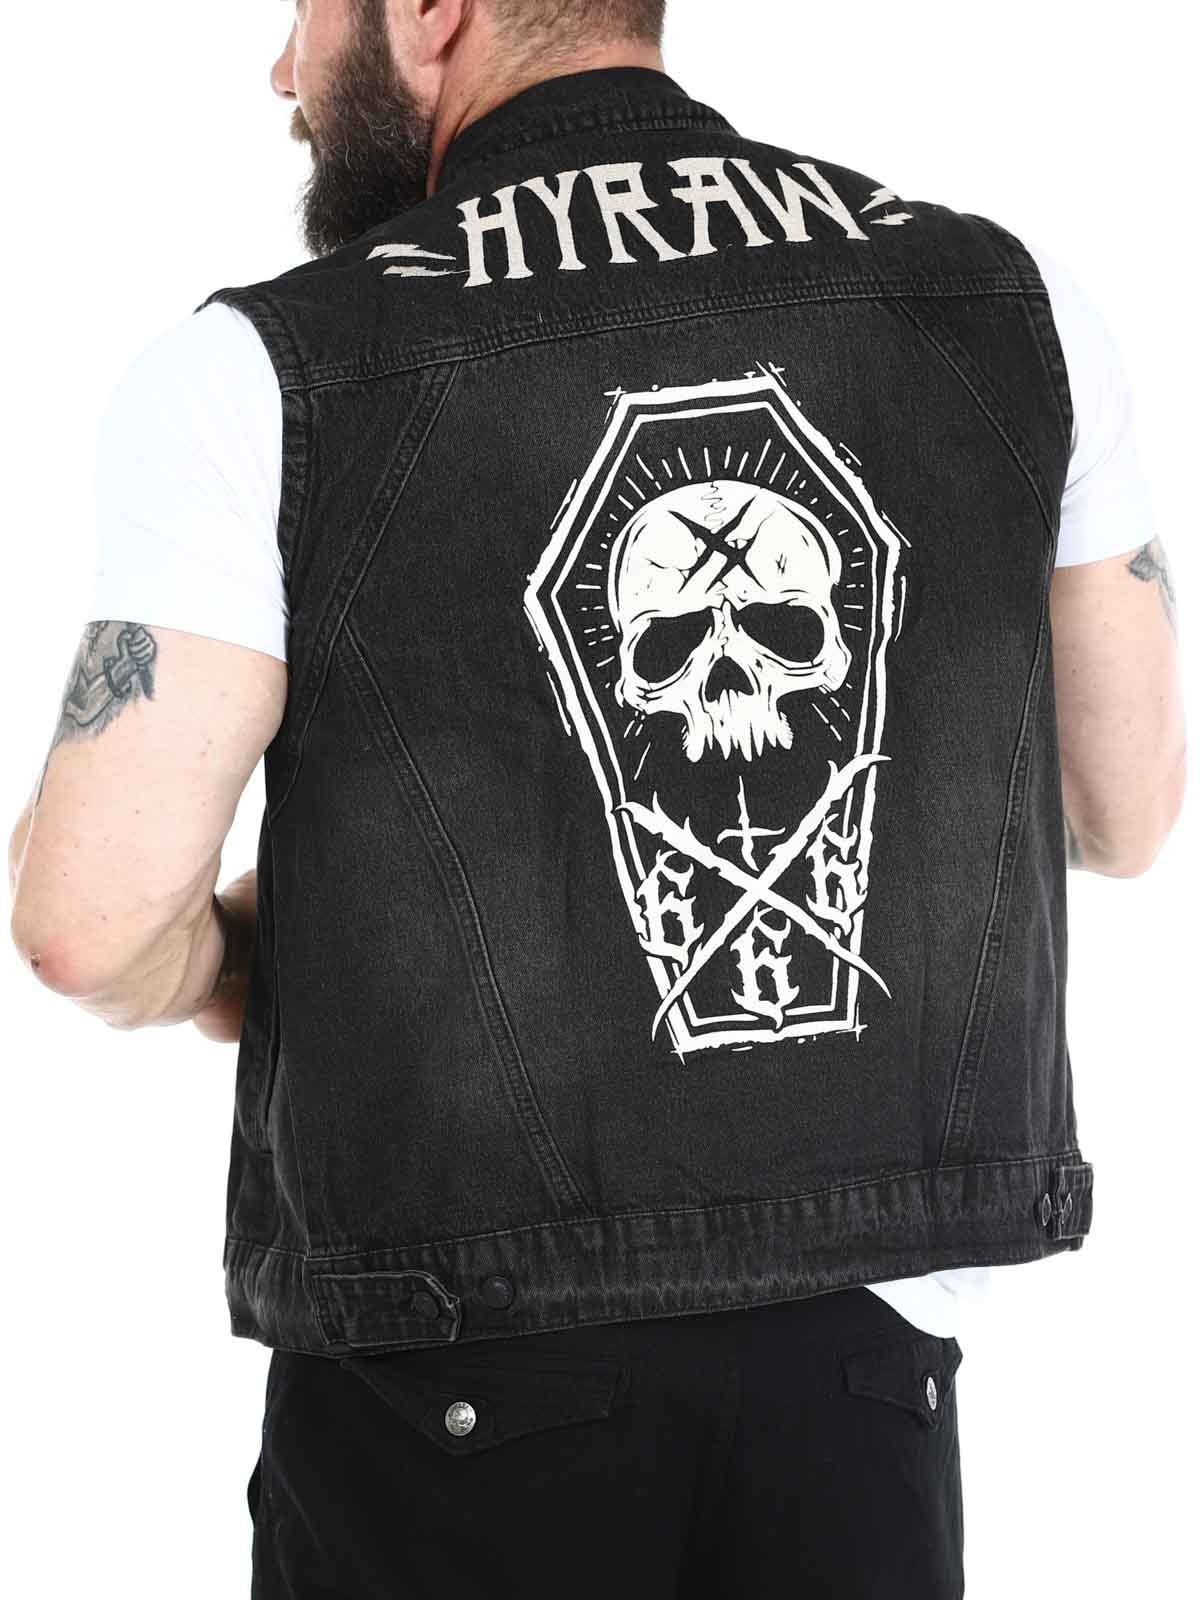 Hyraw Black Vest with Coffin_6.jpg